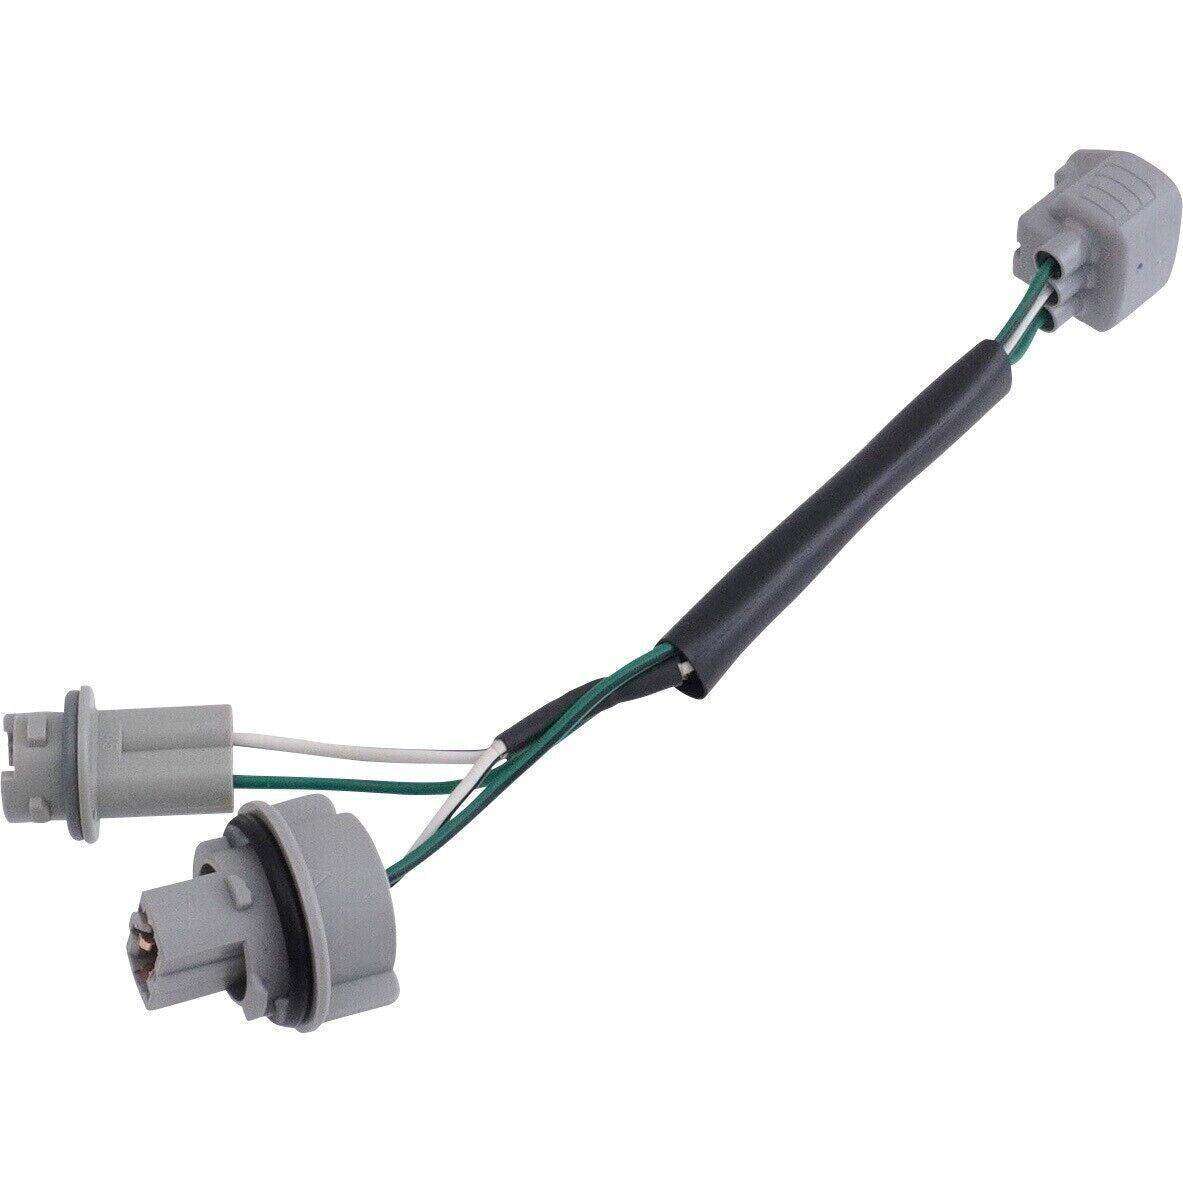 TOYOTA Genuine 97-98 SUPRA Front Turn Signal Light Lamp Plug Socket Plugs